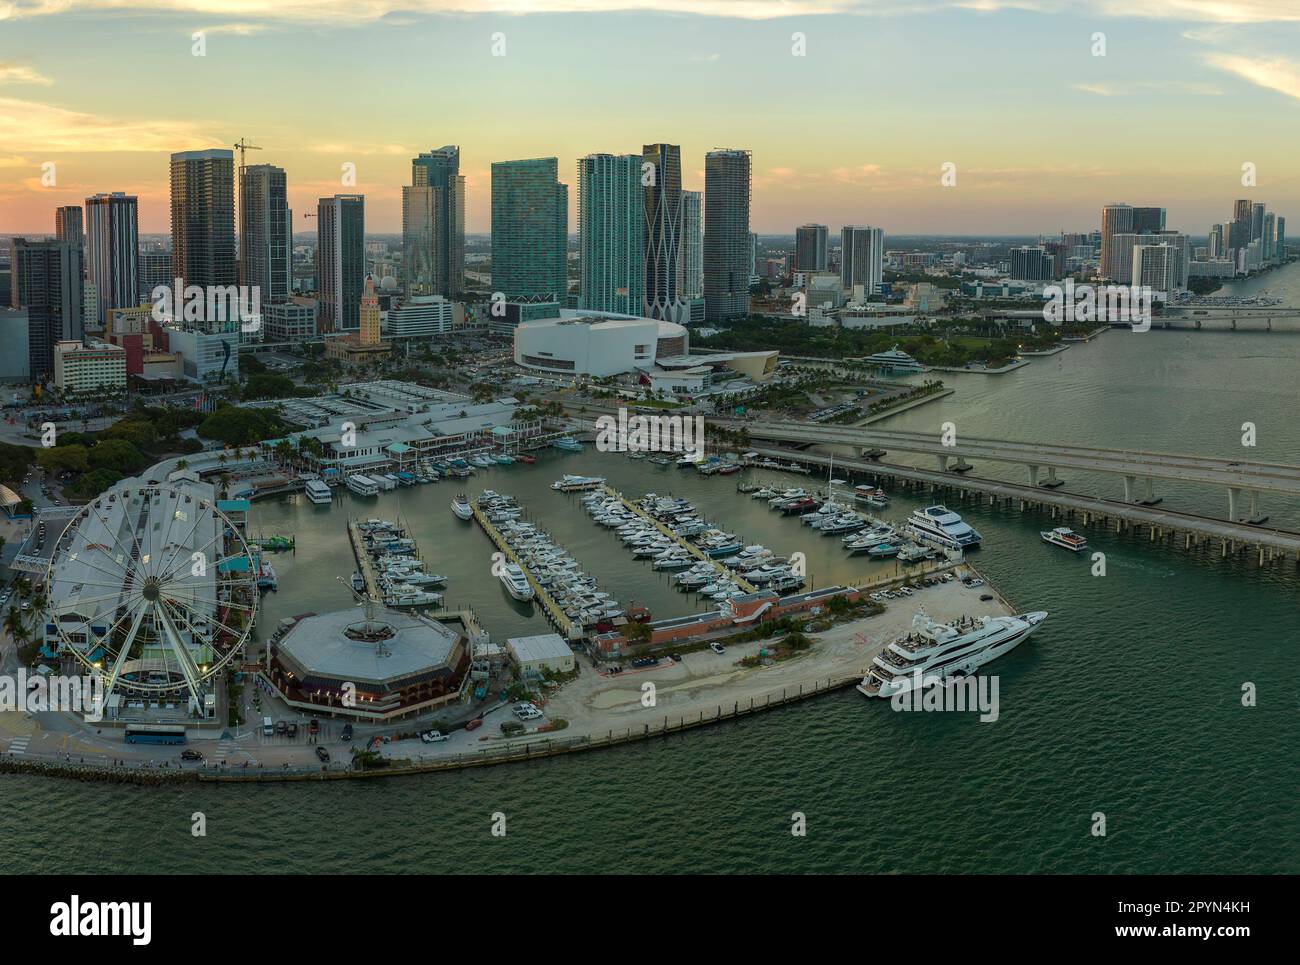 Hohe beleuchtete Wolkenkratzer von Brickell, dem Finanzzentrum der Stadt. Skyviews Miami Observation Wheel am Bayside Marketplace mit Reflexionen in Biscayn Stockfoto